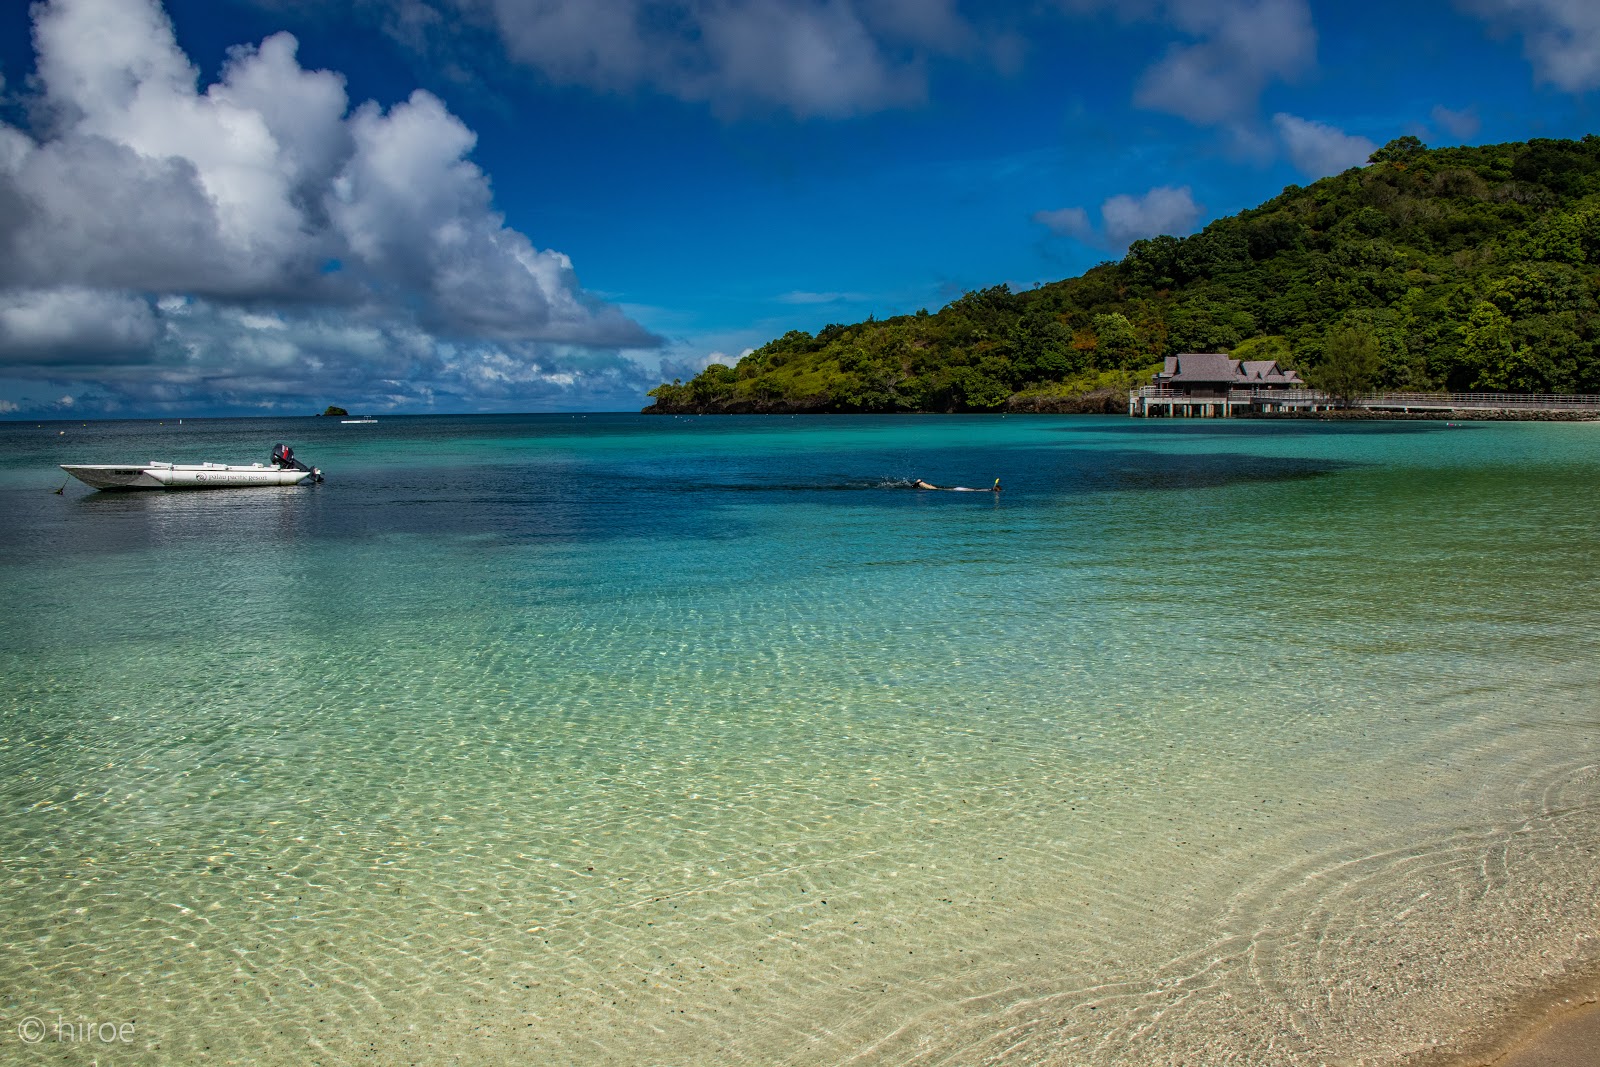 Fotografie cu Palau Pacific Resort cu o suprafață de apa pură turcoaz